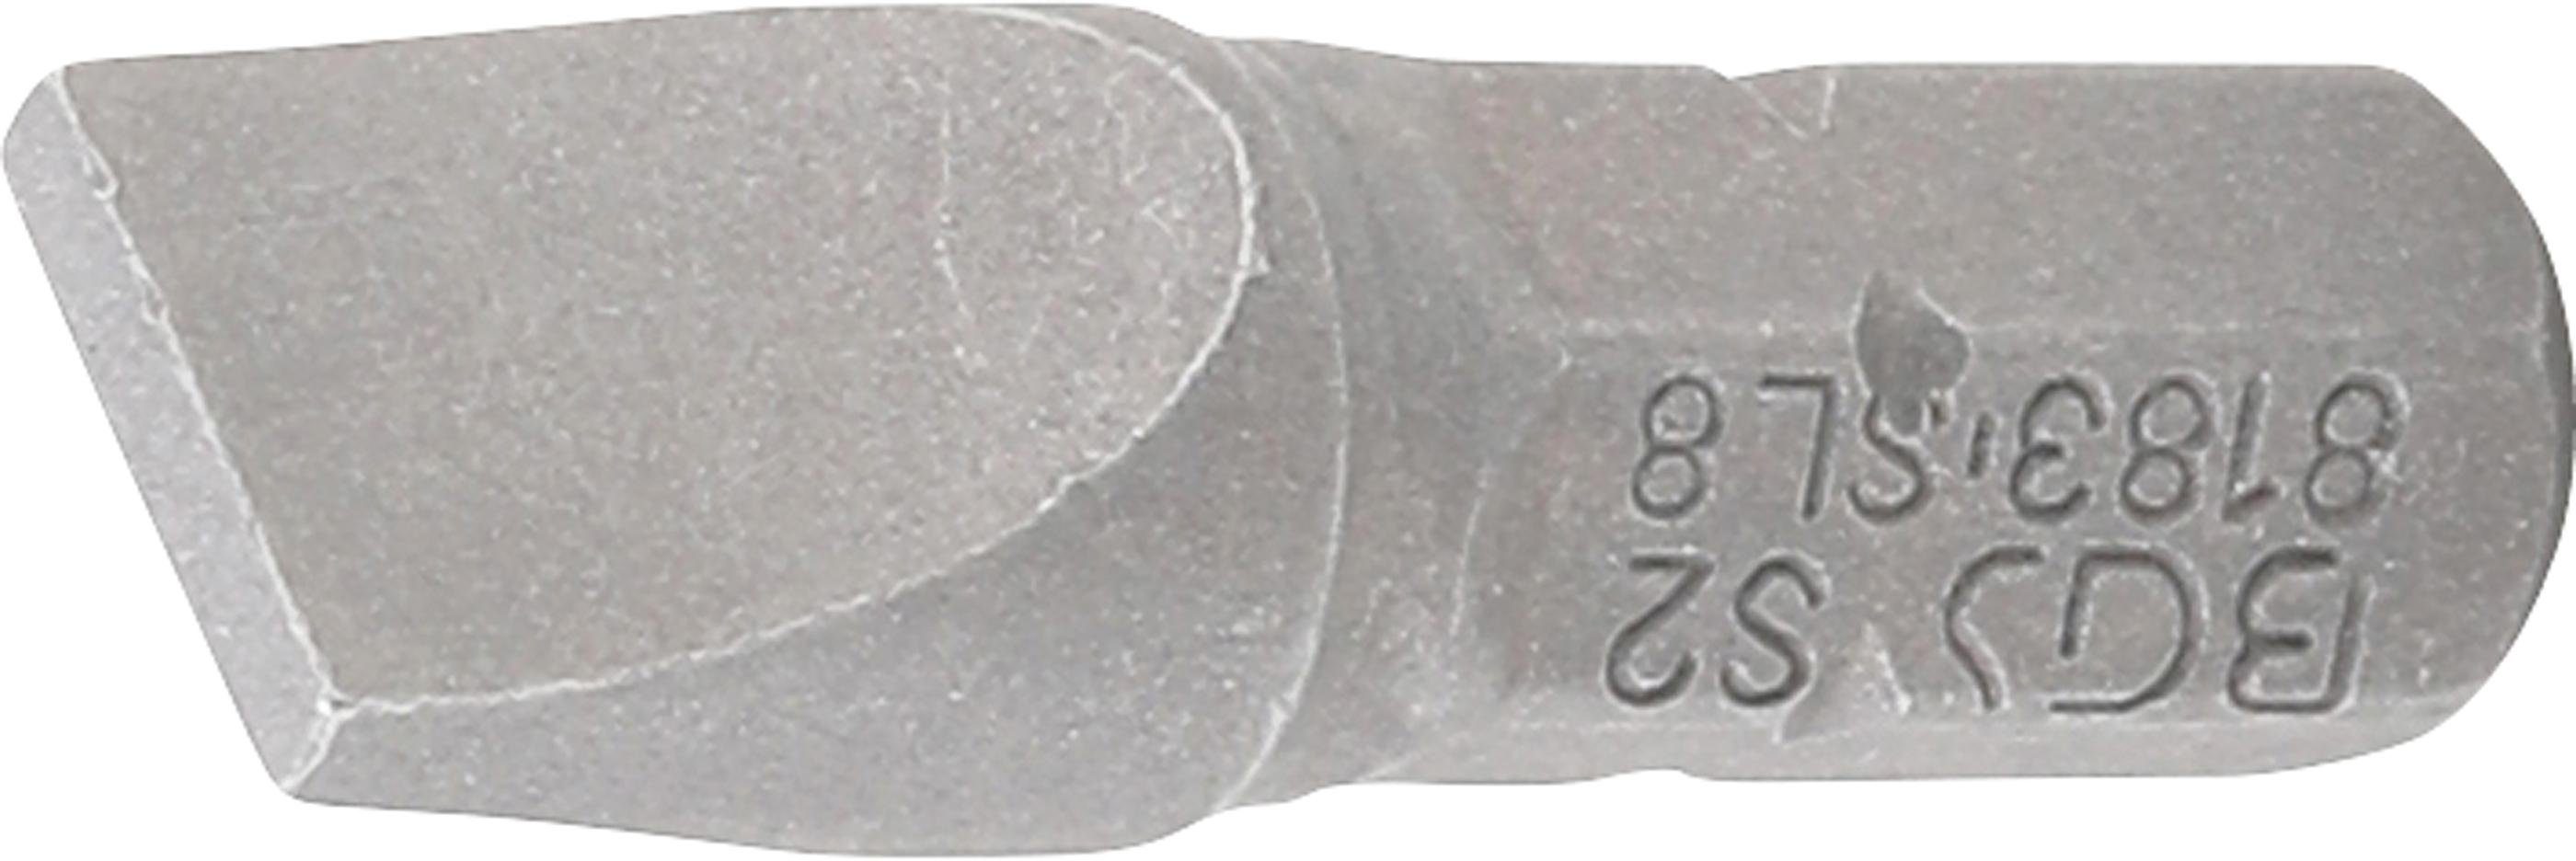 BGS technic Bit-Schraubendreher 8 6,3 mm Außensechskant Schlitz mm Bit, Antrieb (1/4)